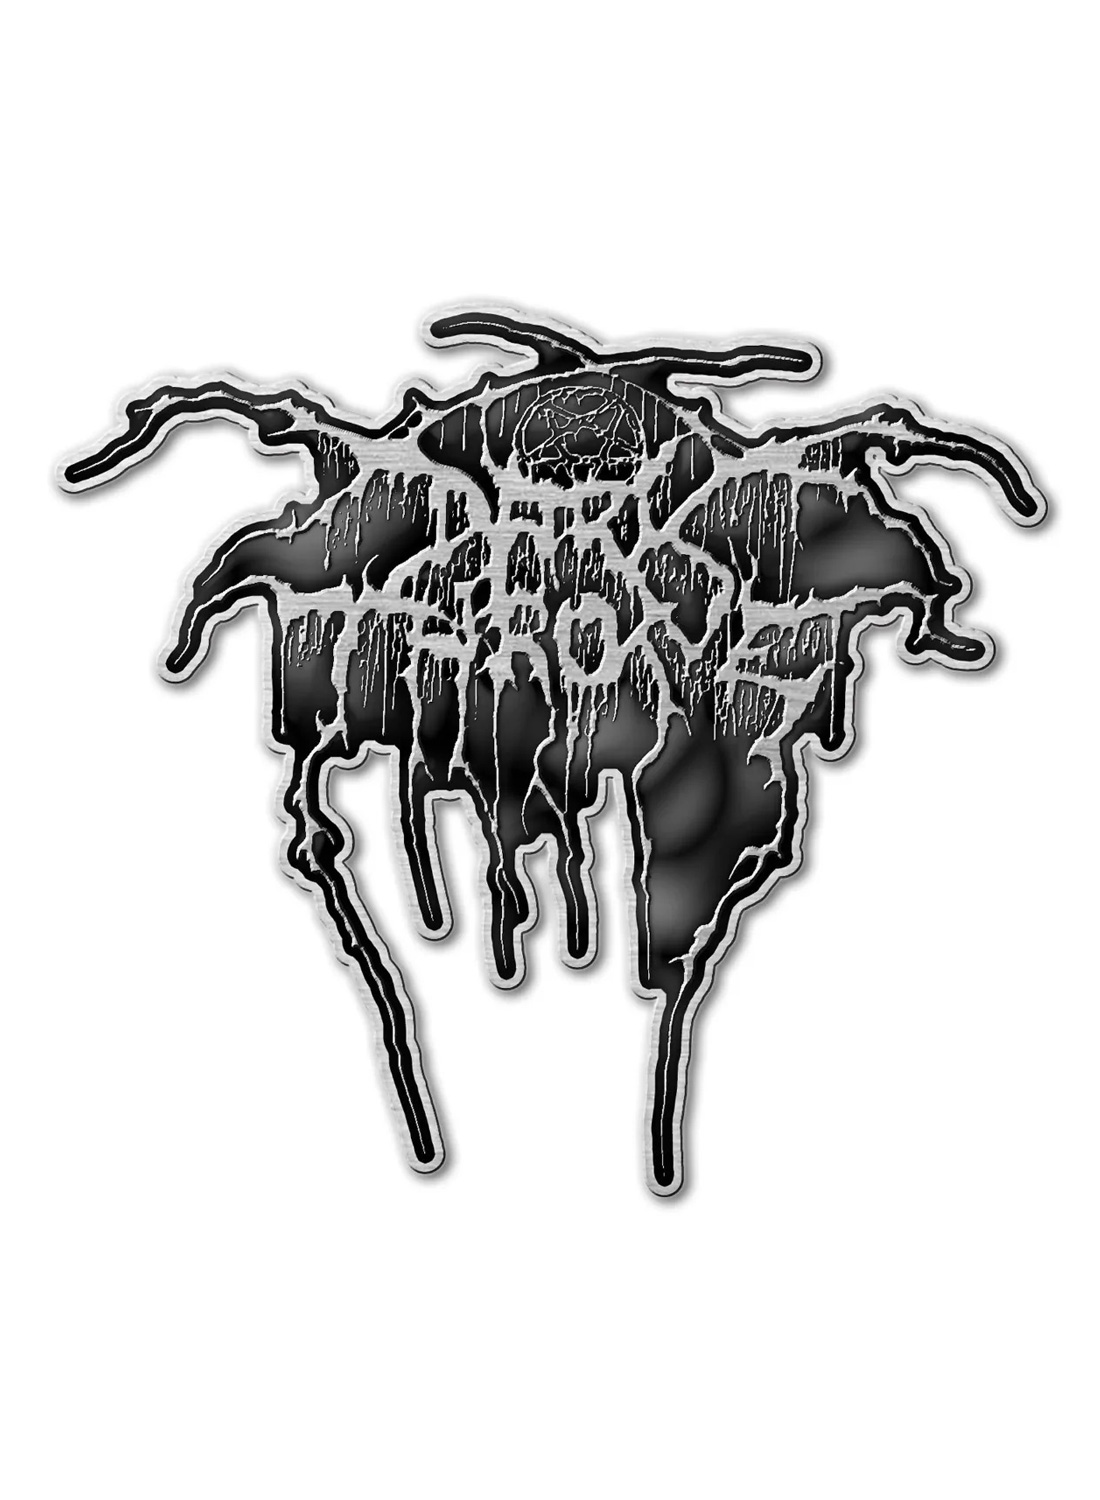 Darkthrone Metal Pin Badge